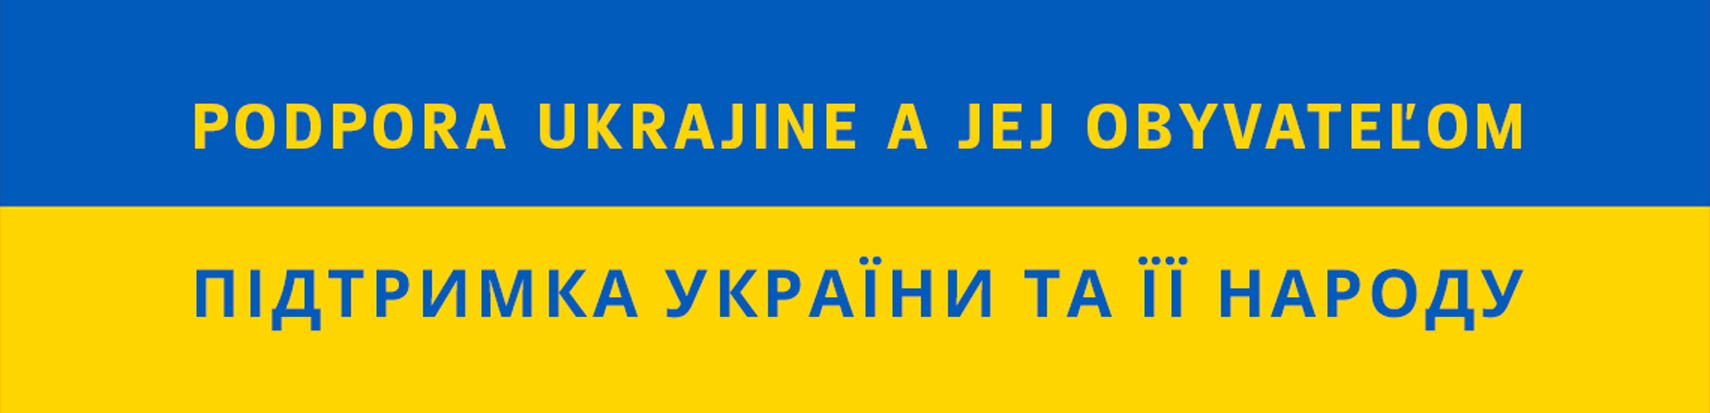 pomozme ukrajine